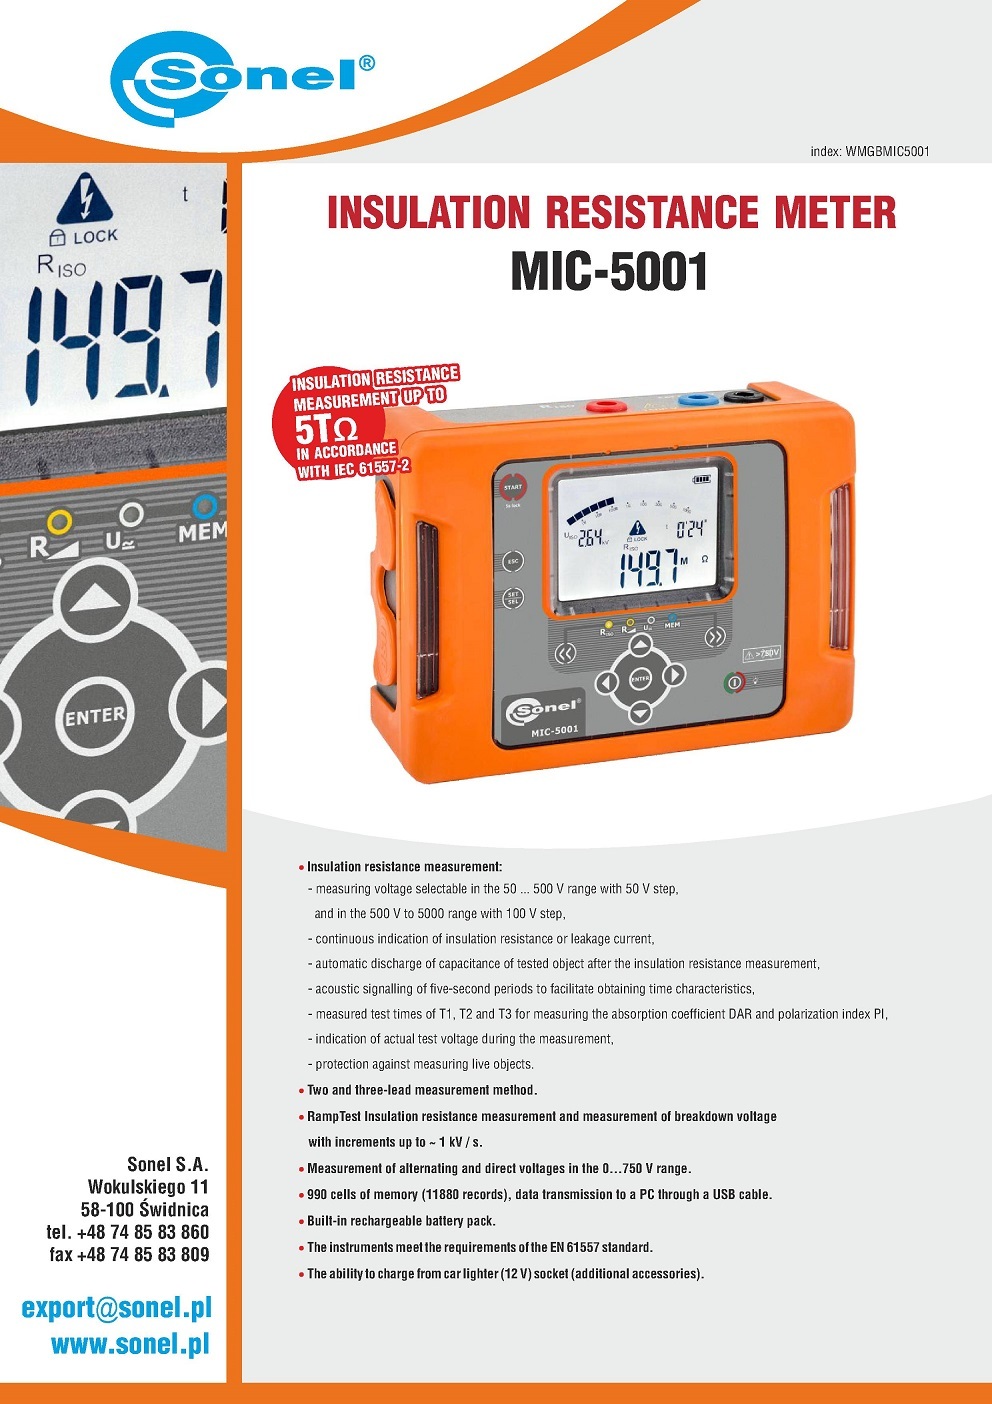 Sonel MIC-5001 - Insulation Resistance Meter